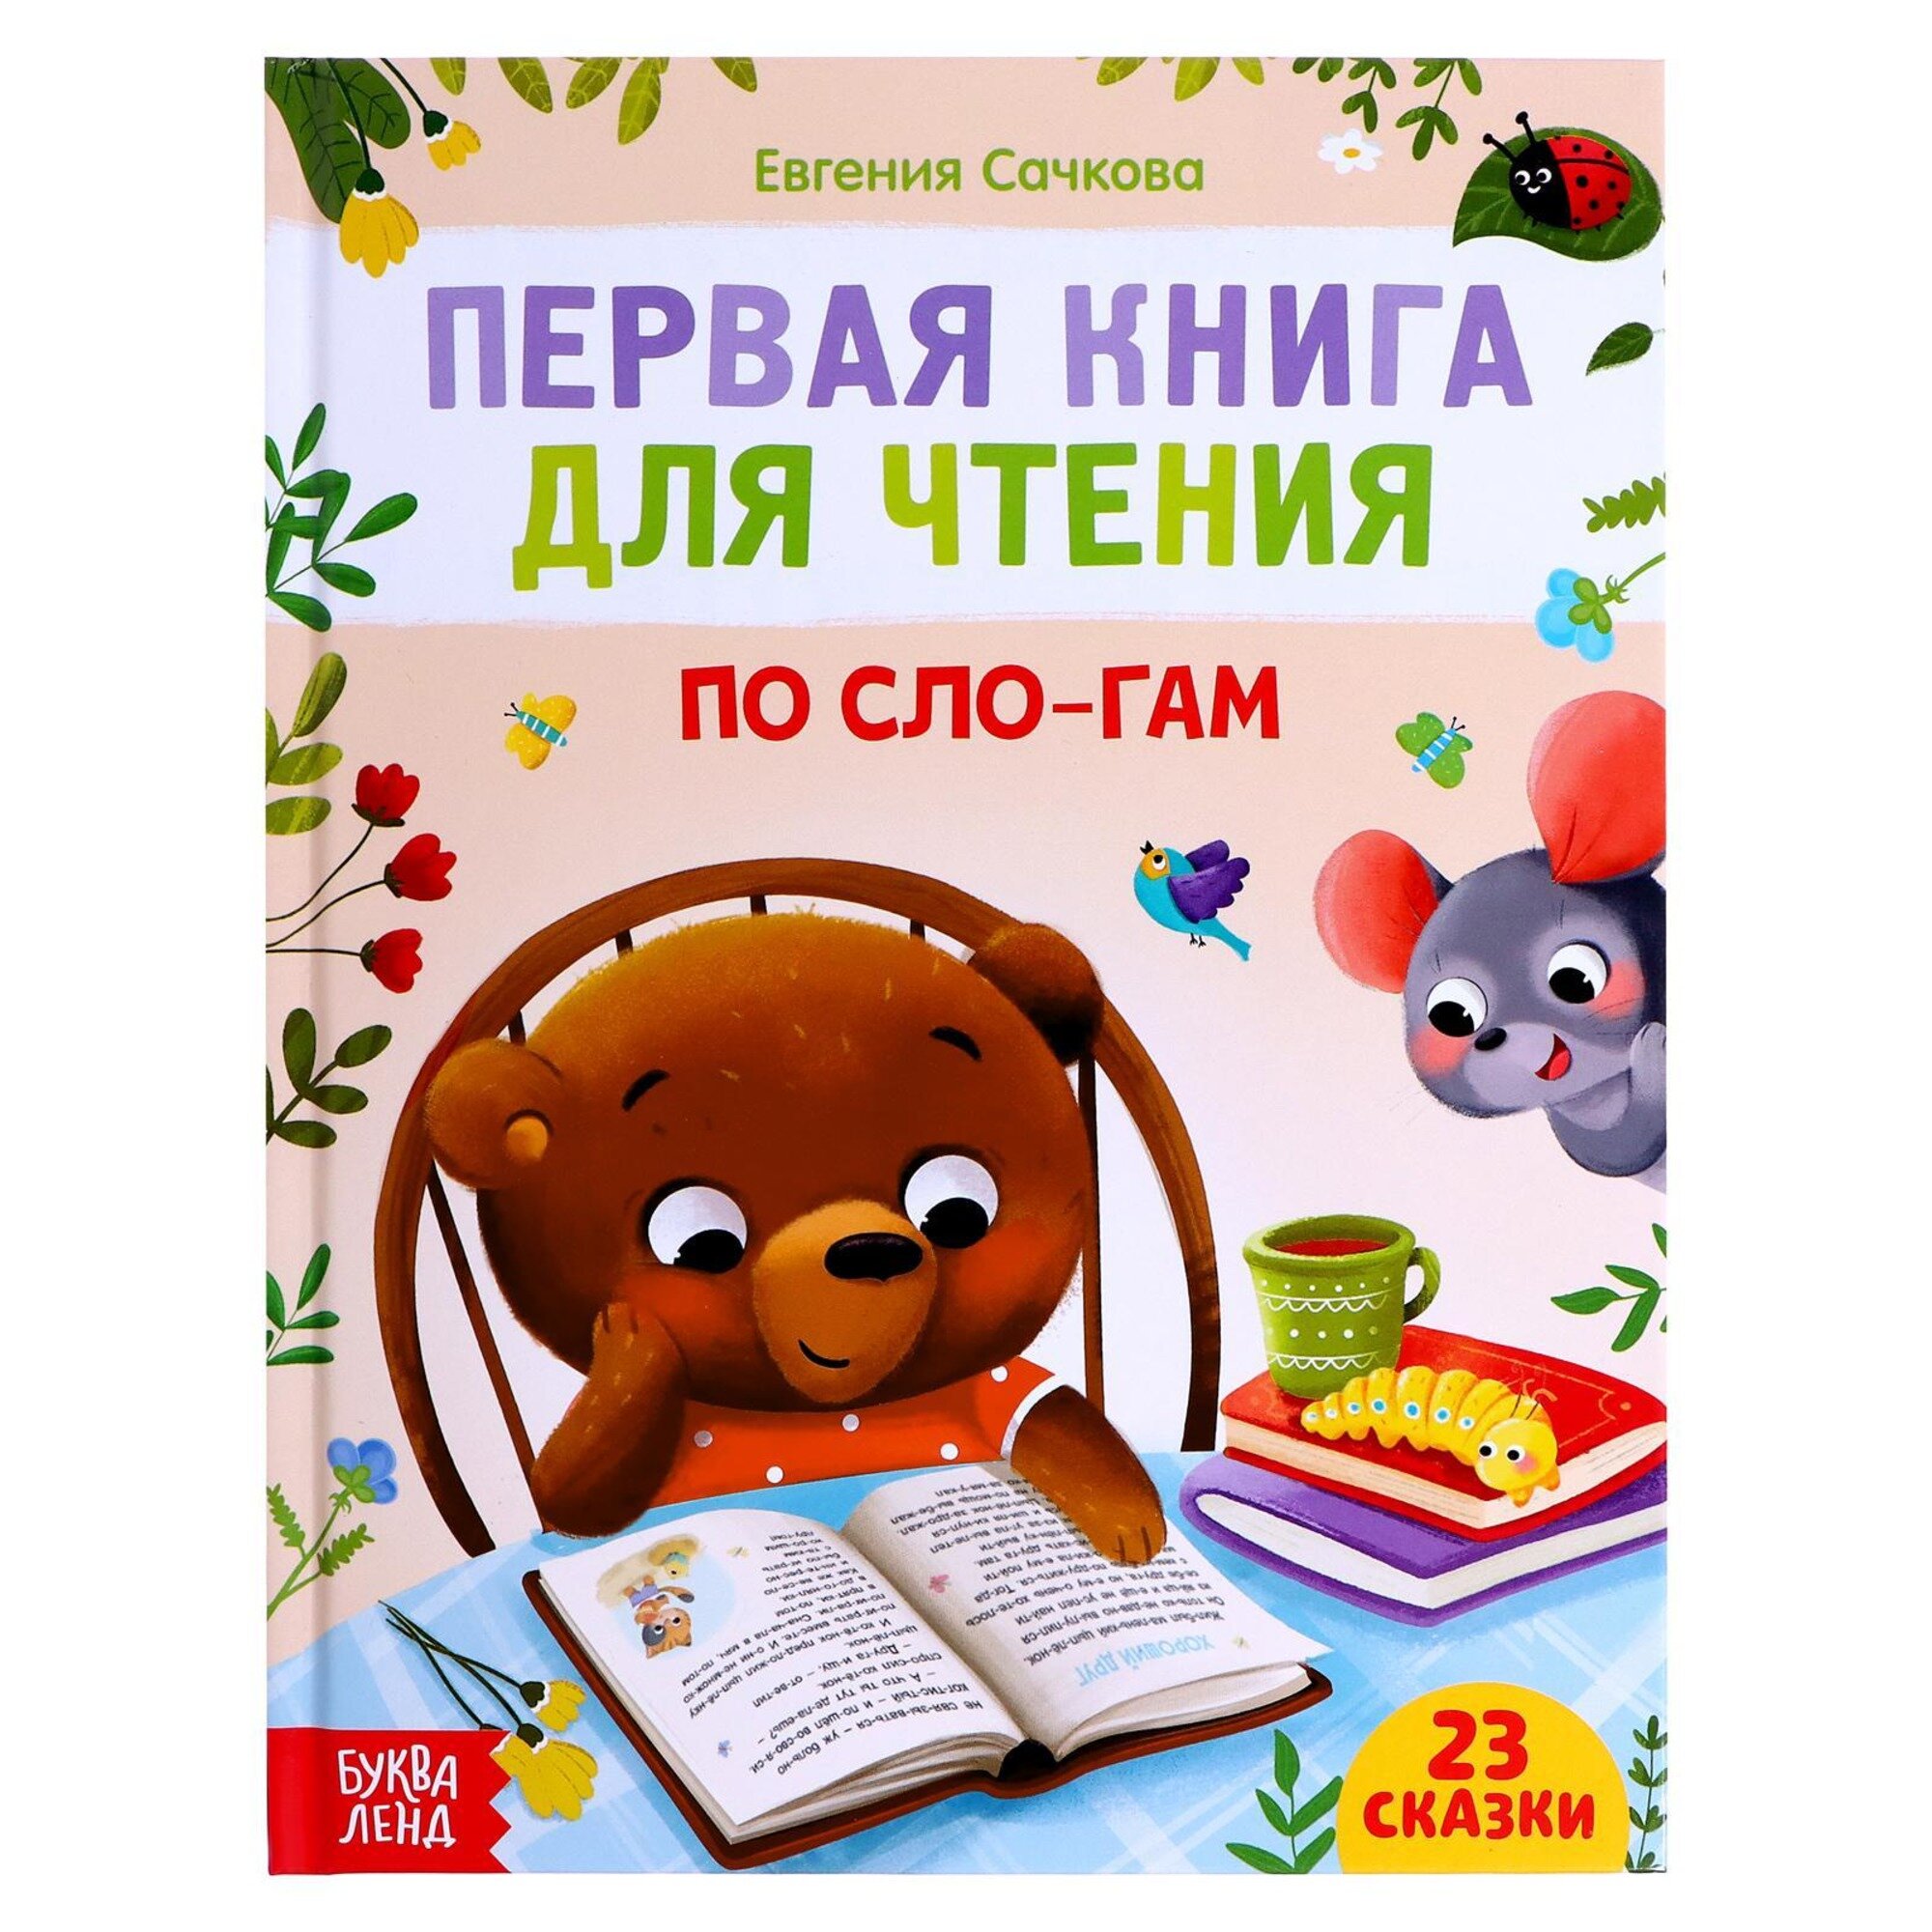 Сачкова Евгения Камилевна "Первая книга для чтения по слогам"